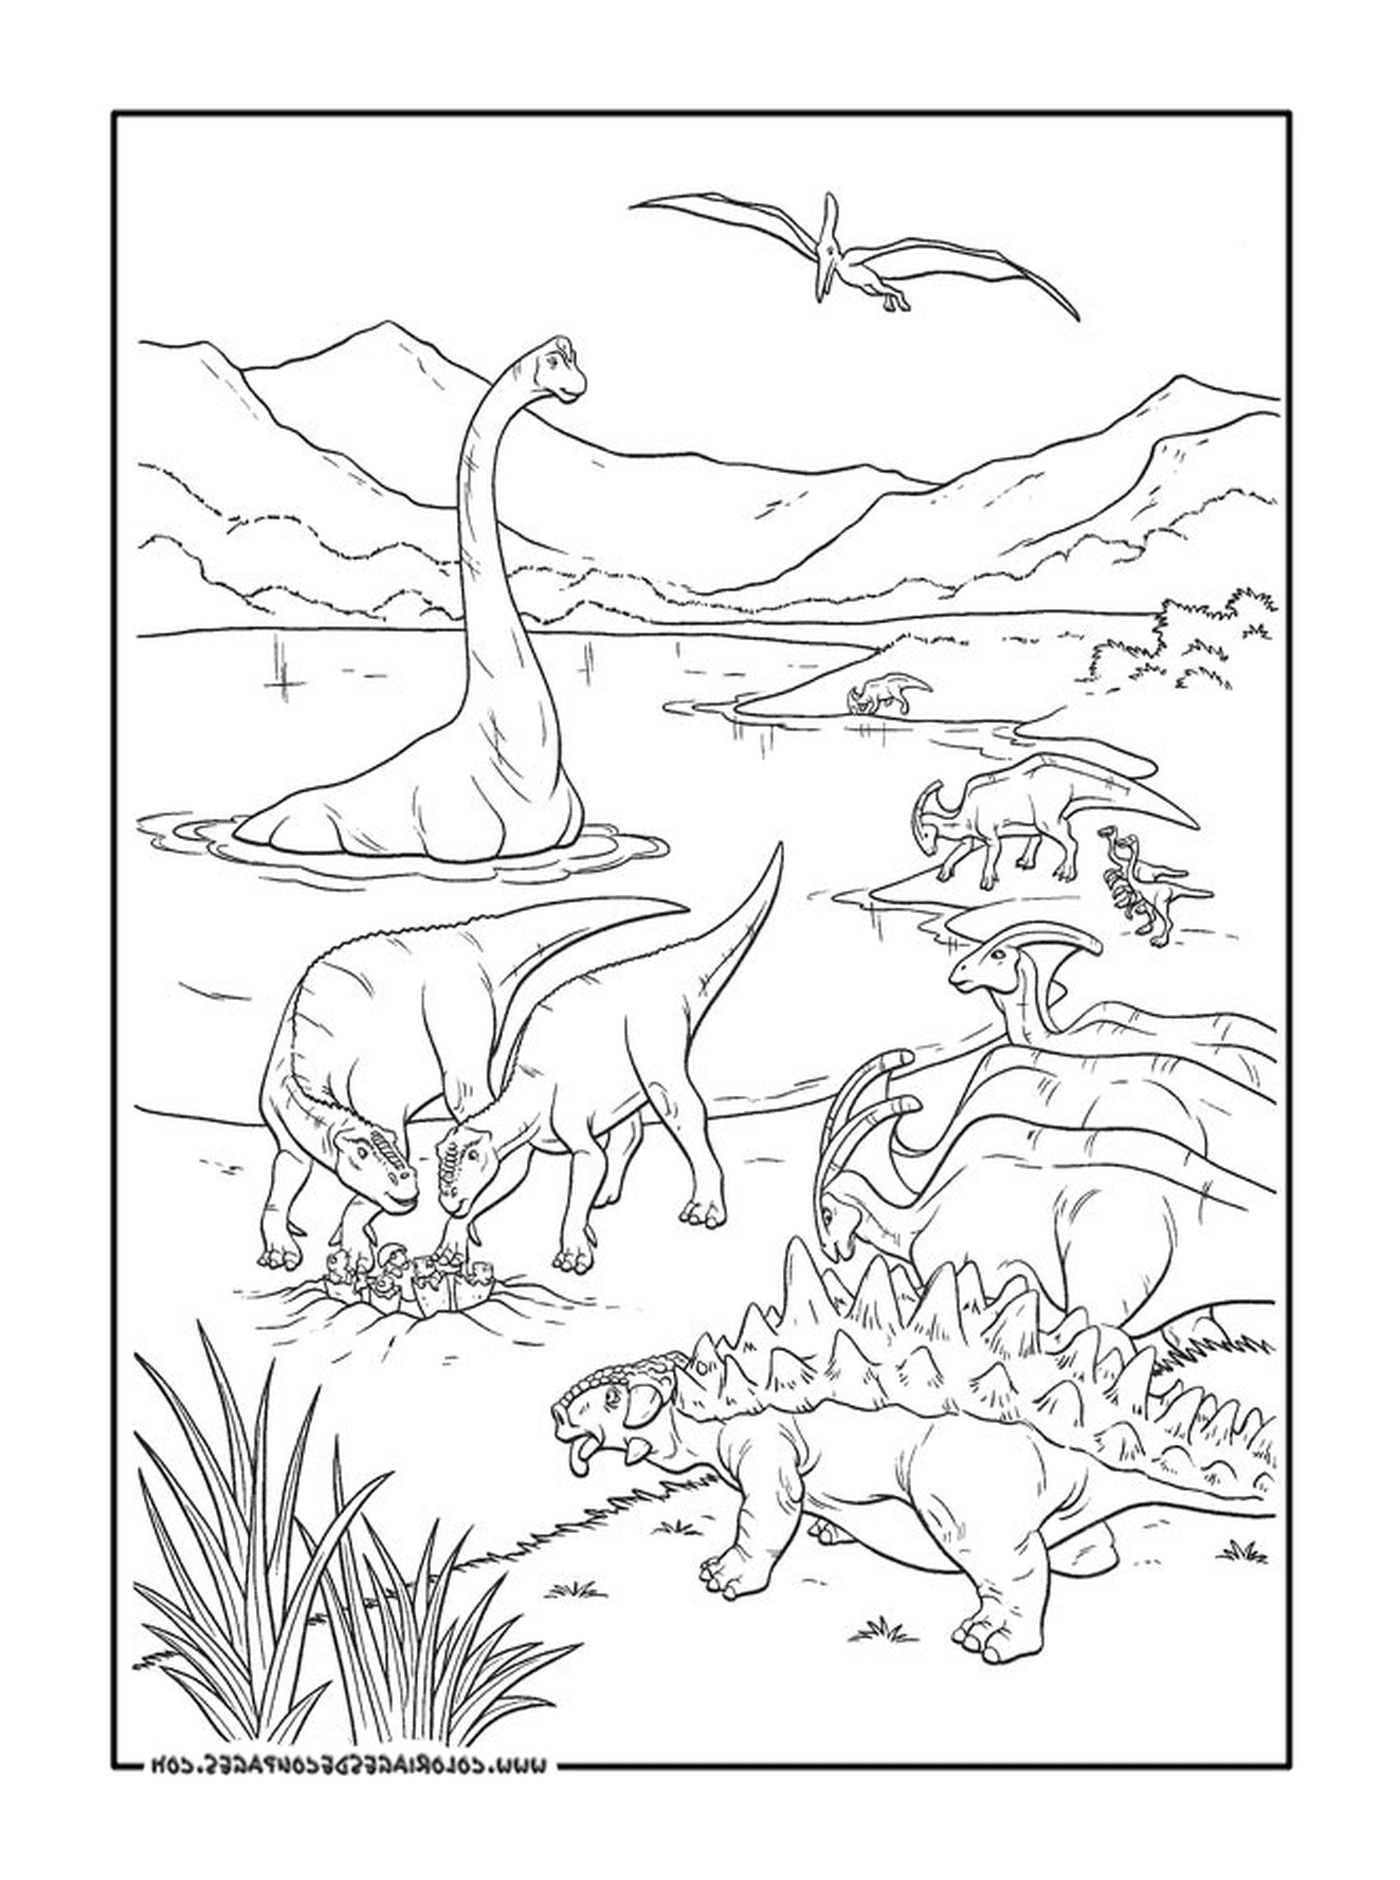  Um adulto de um grupo de dinossauros 